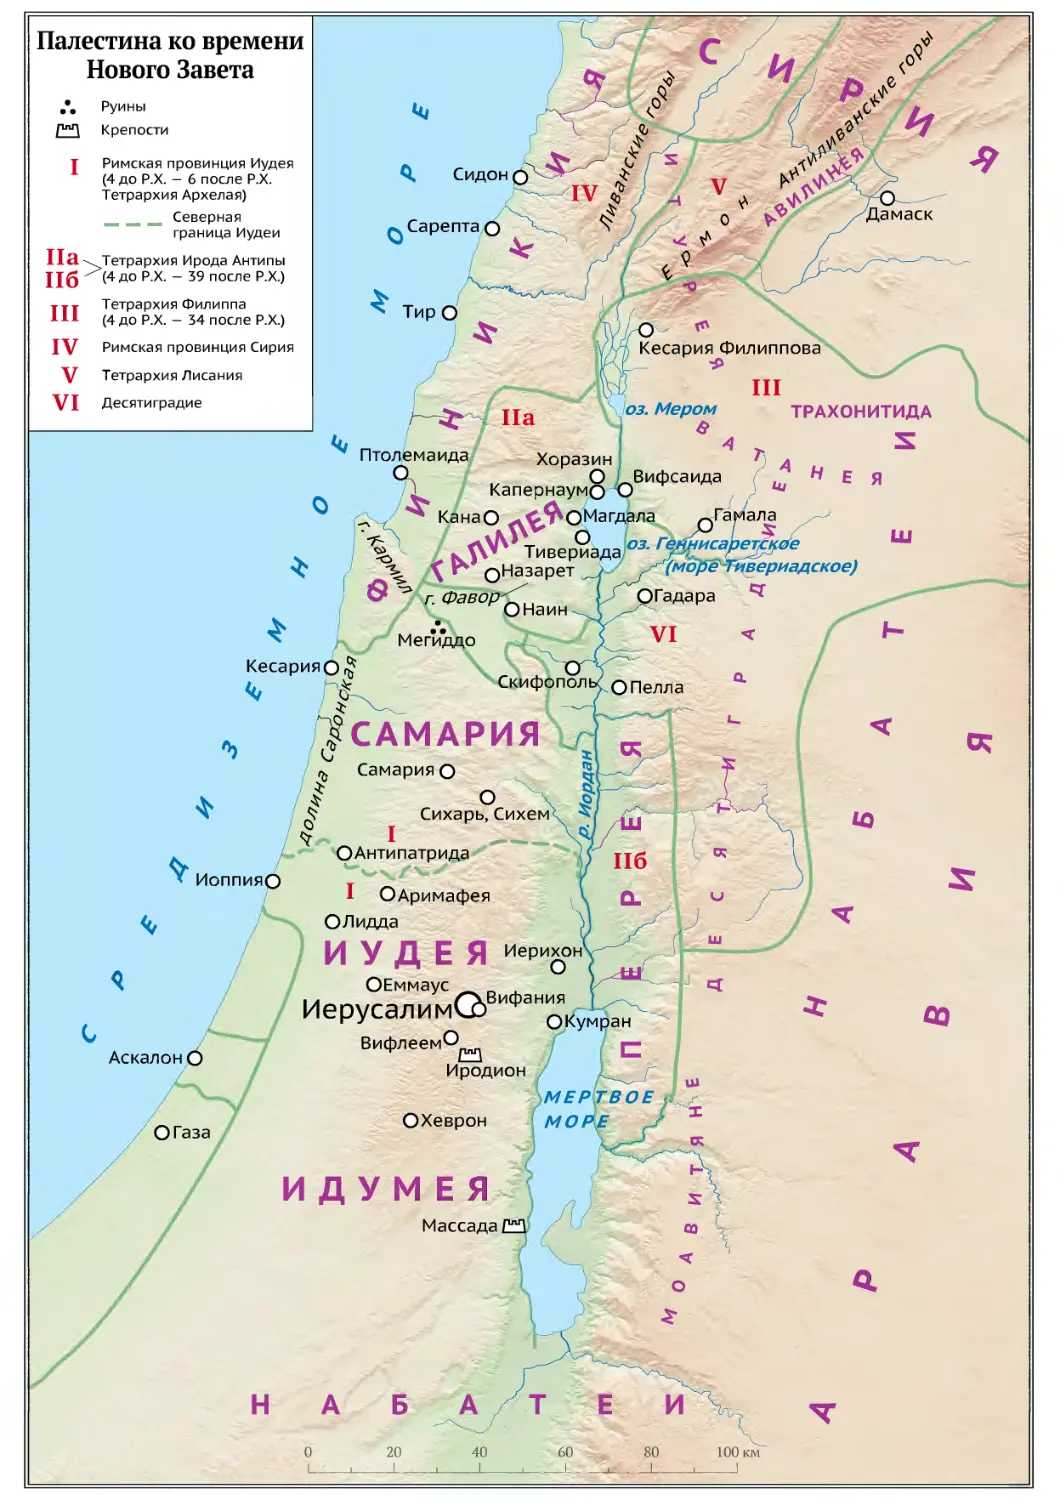 Карта: Палестина ко времени Нового Завета